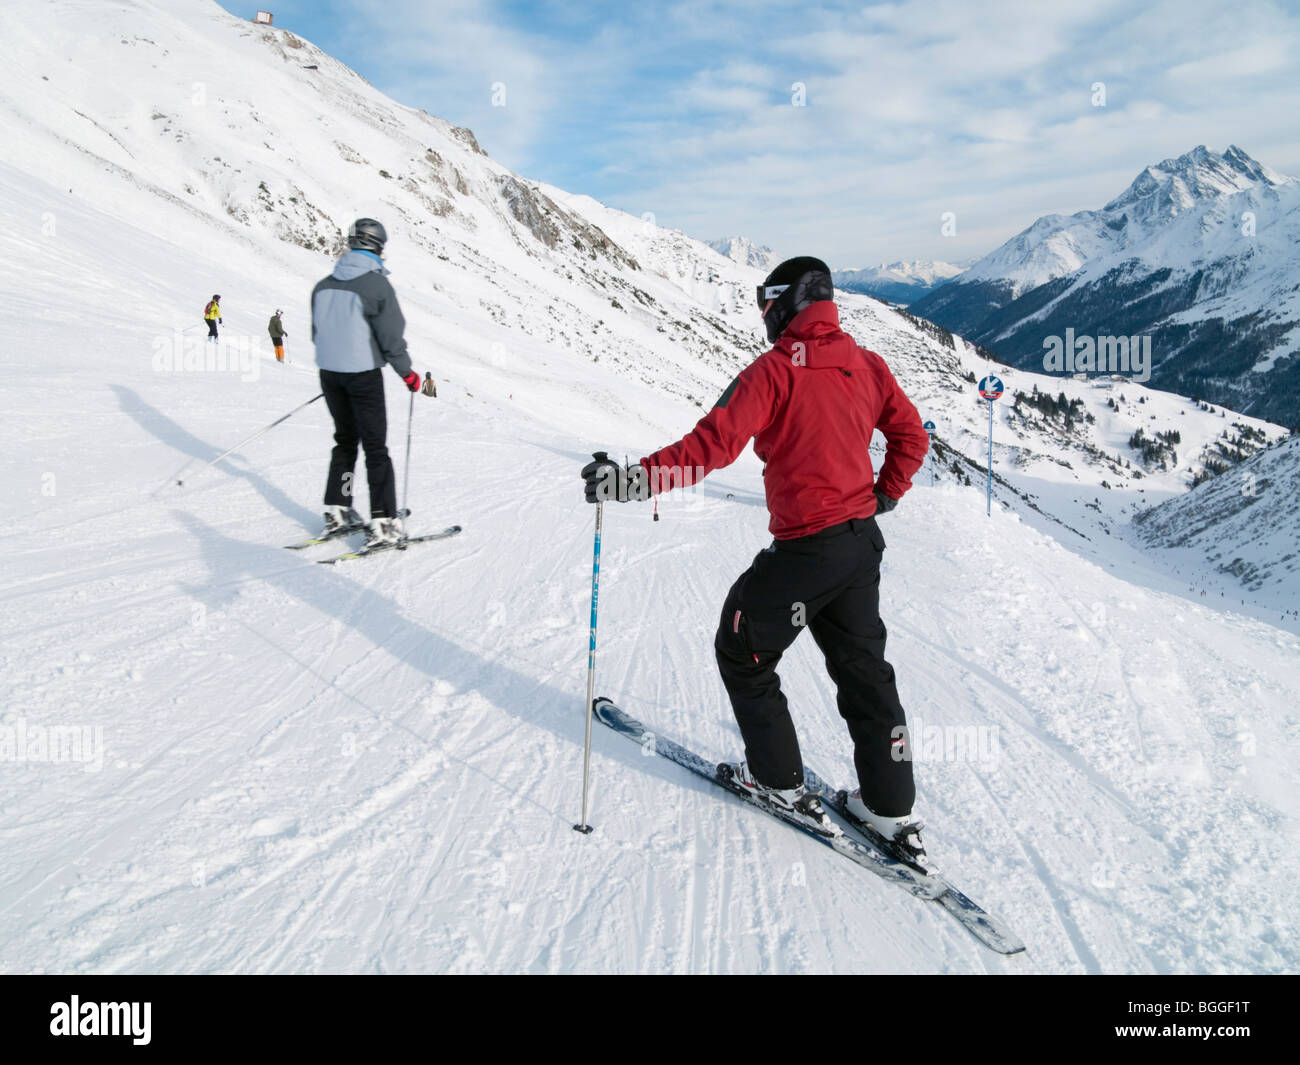 St Anton am Arlberg, Tyrol, Autriche, Europe. Veste rouge en skieur sur les pistes de ski couvertes de neige dans les Alpes autrichiennes. Banque D'Images